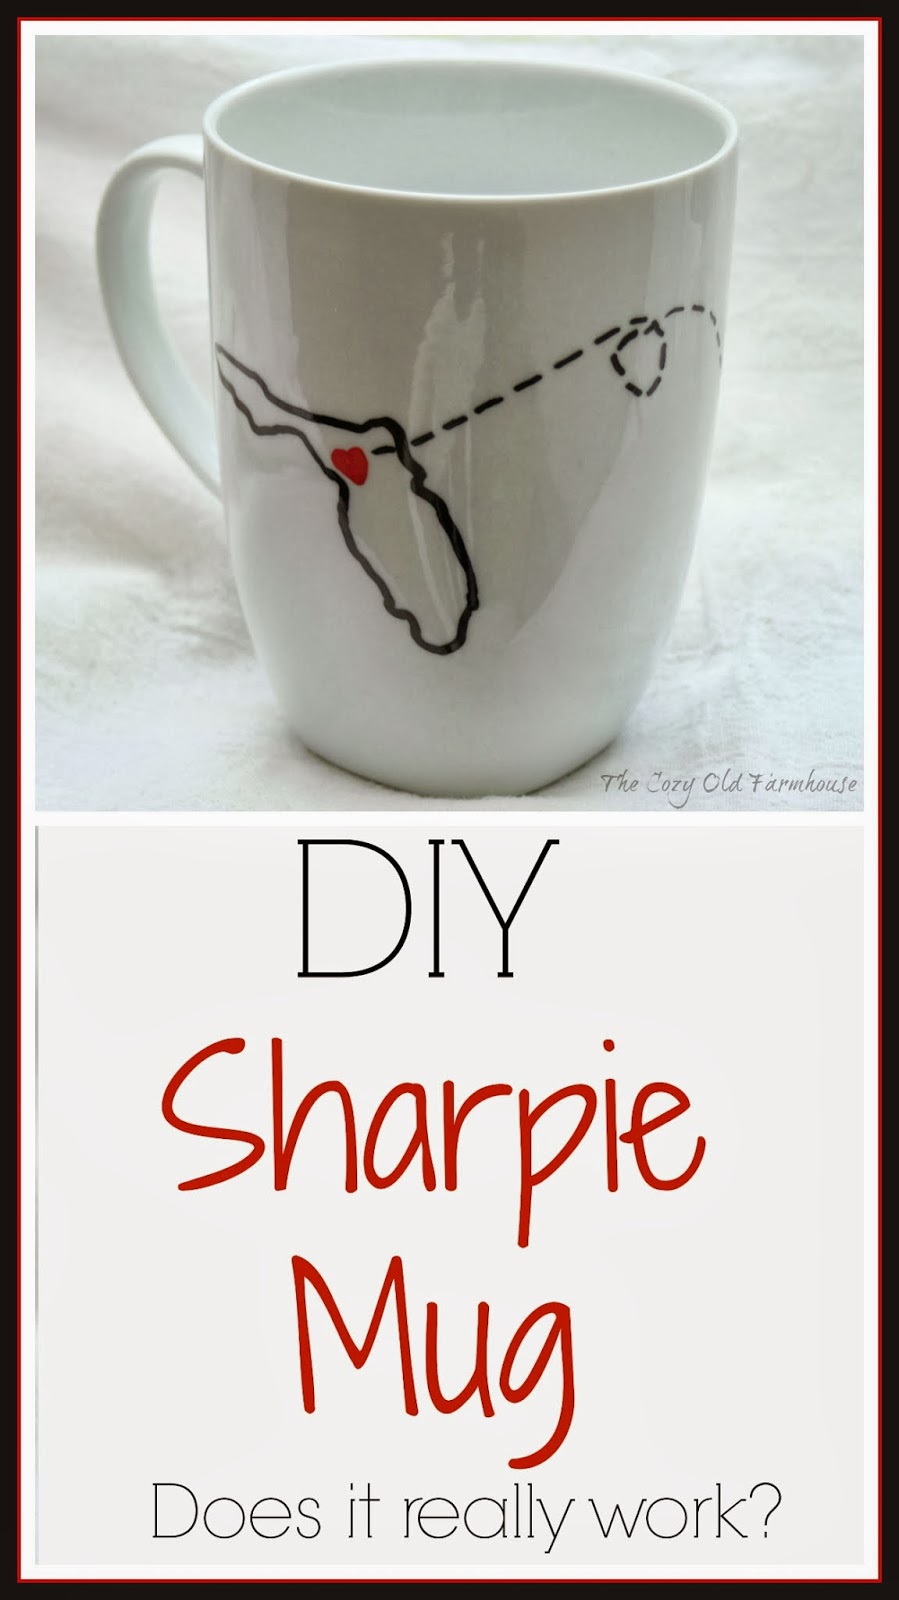 DIY Sharpie Painted Mugs - That Won't Wash Away!